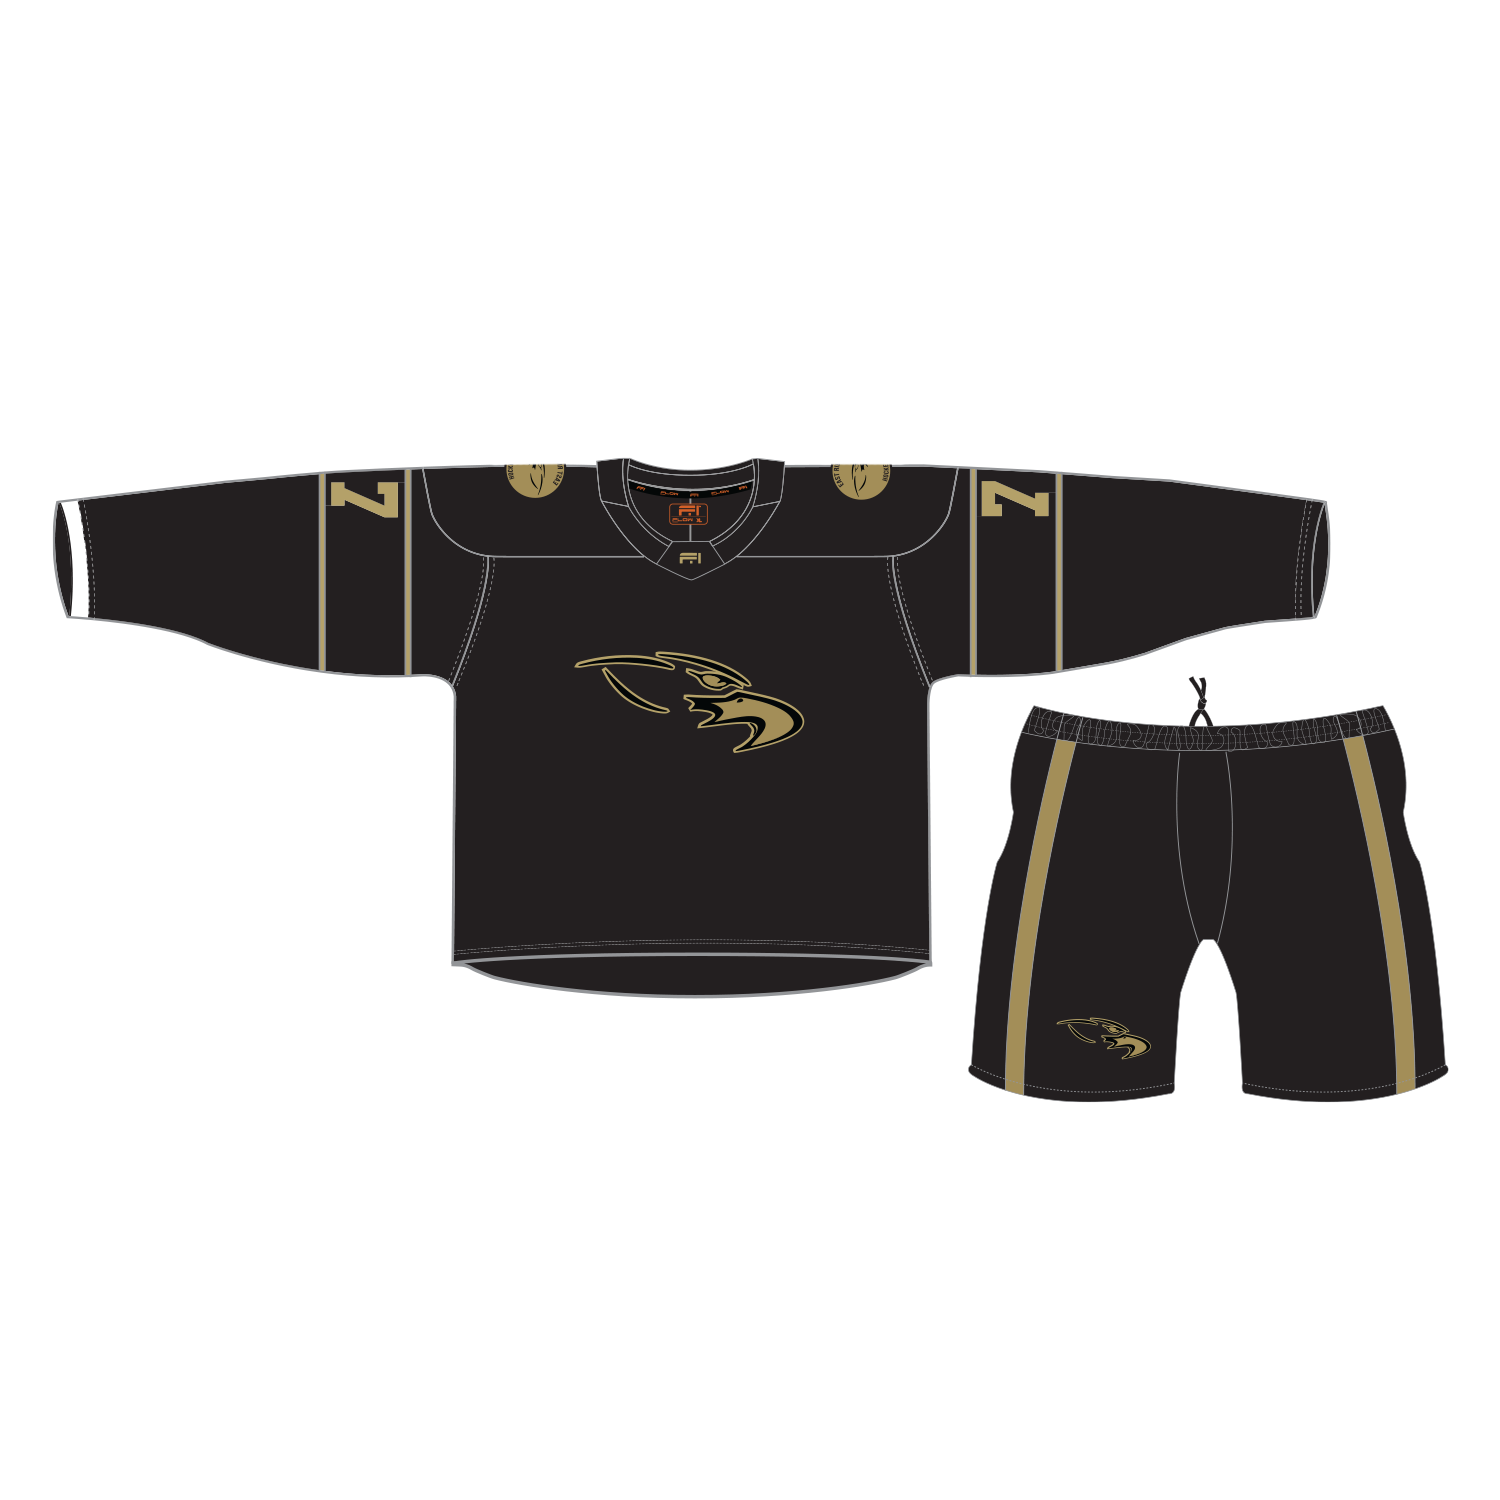 Flow Hockey custom jerseys